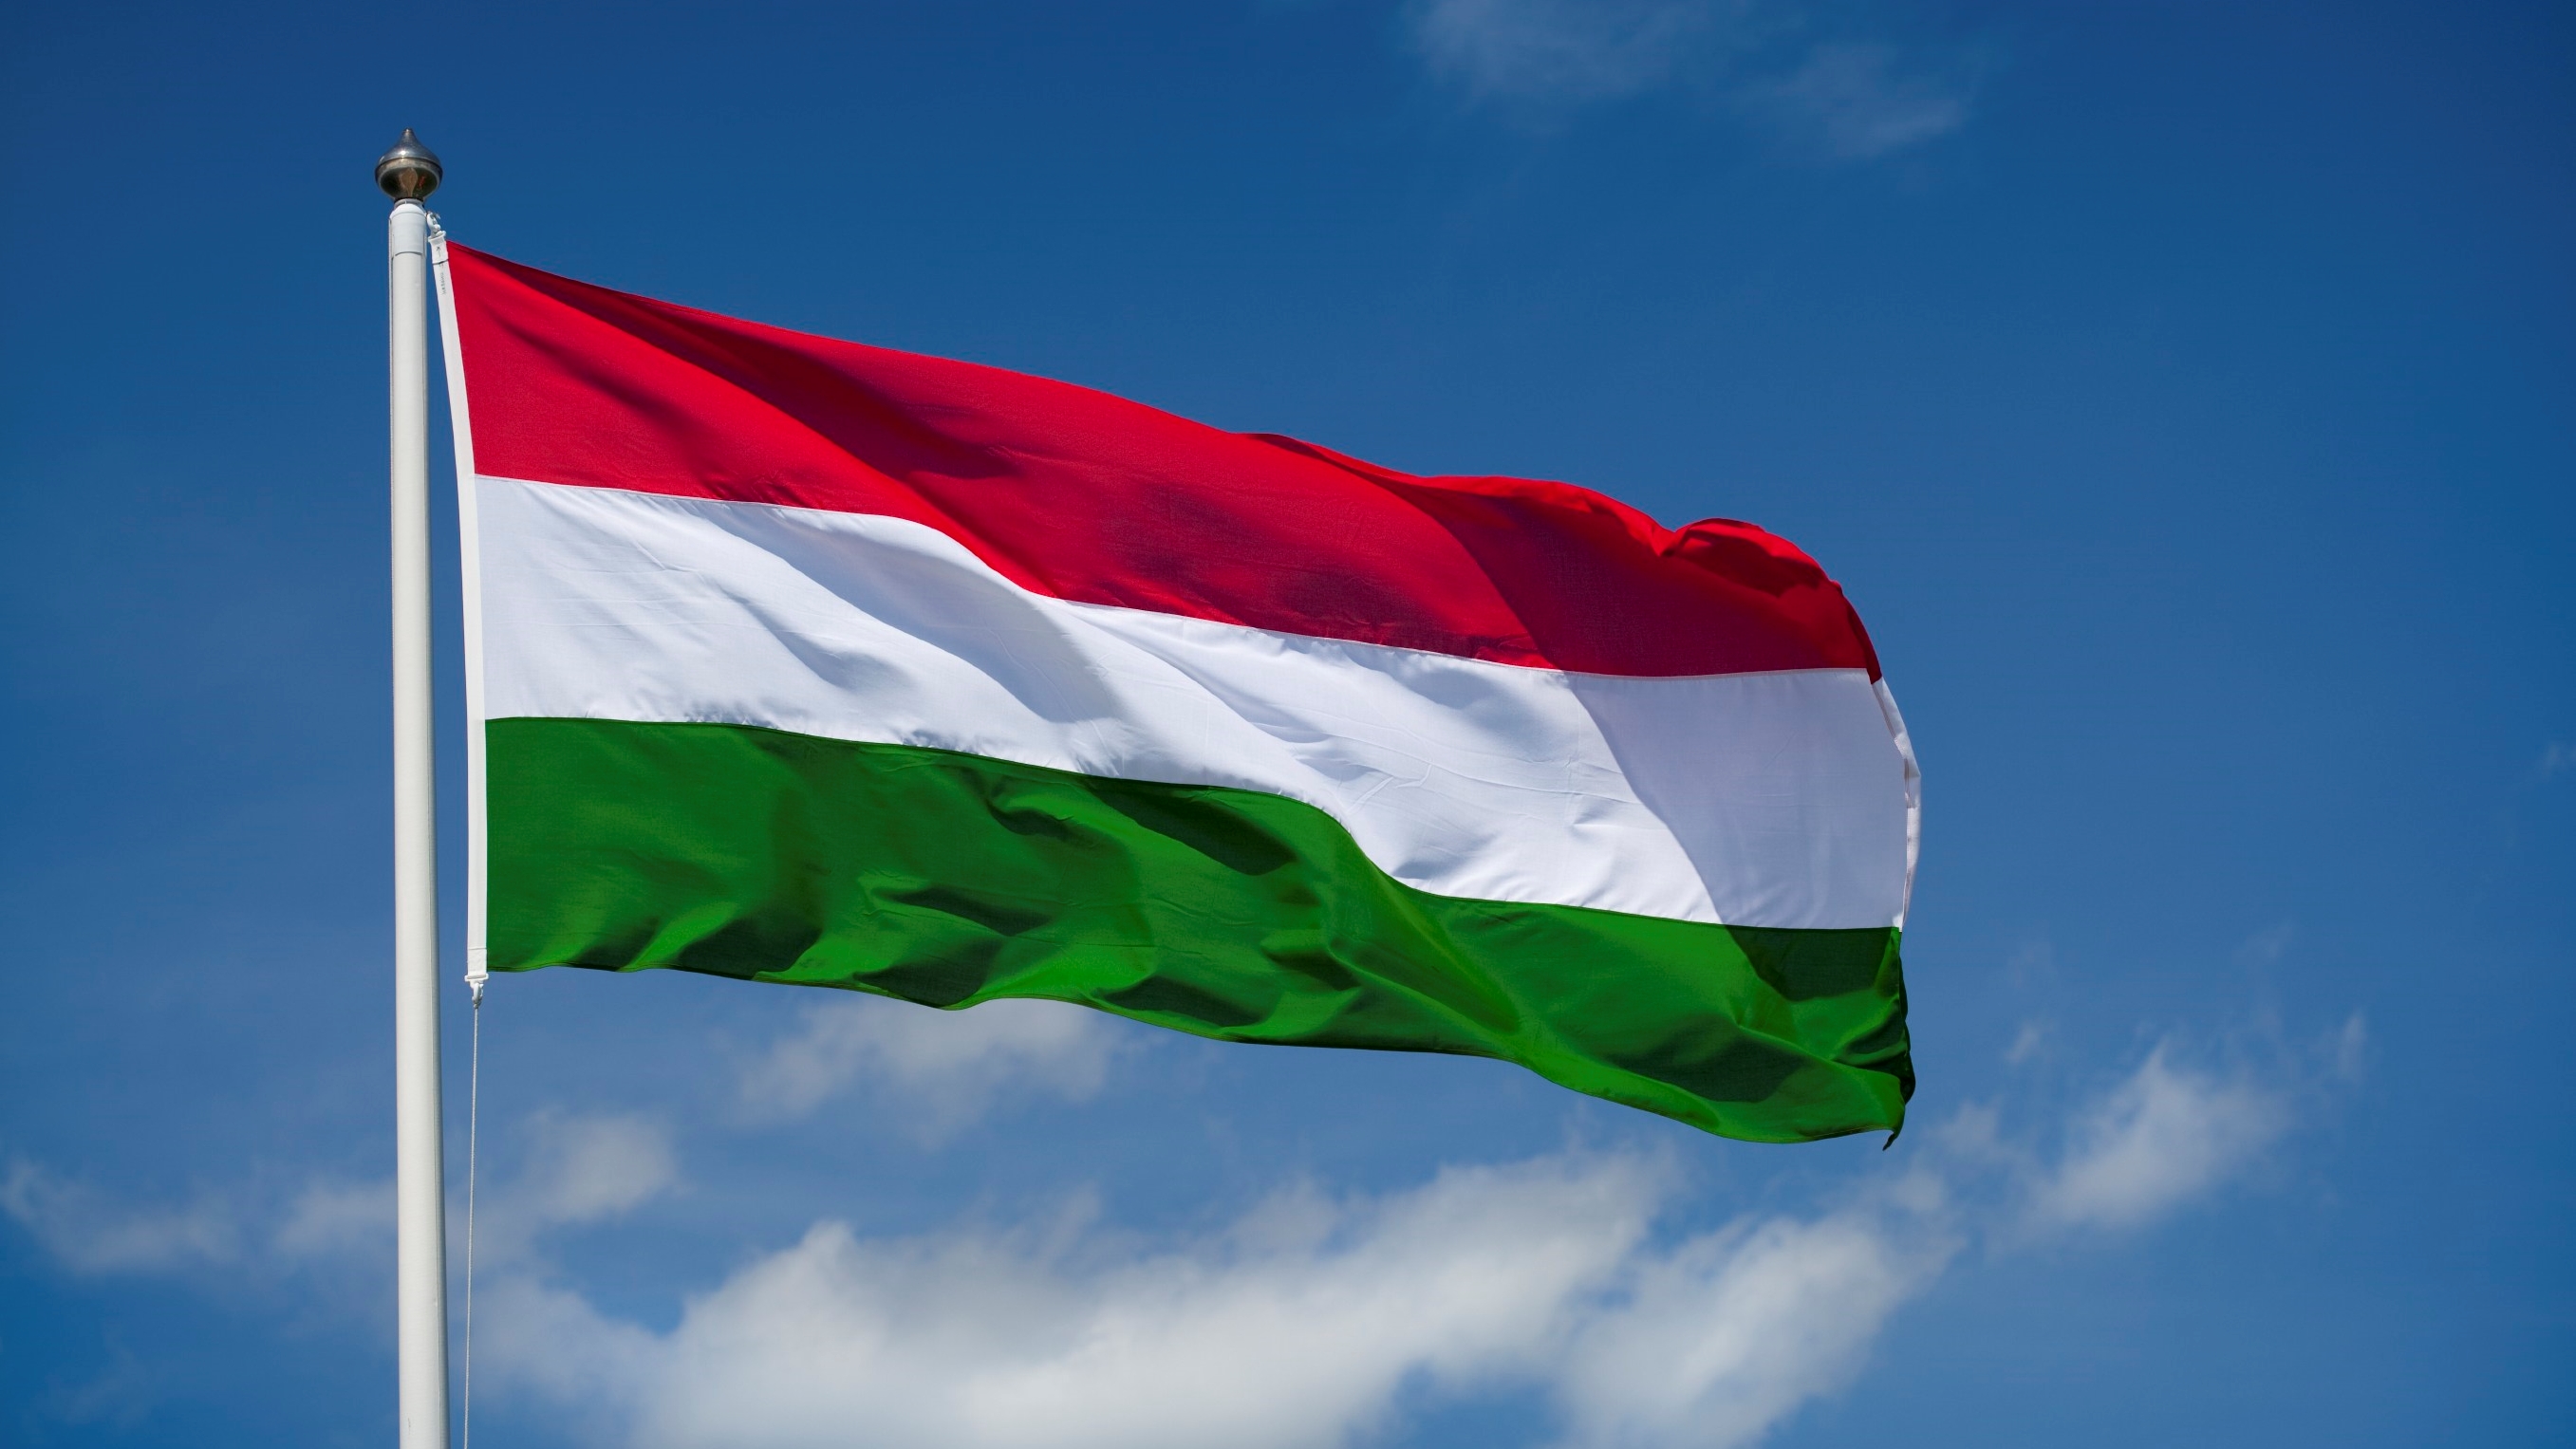 Macaristan'daki Sürüş Yasakları Kısmi Olarak Kaldırıldı 